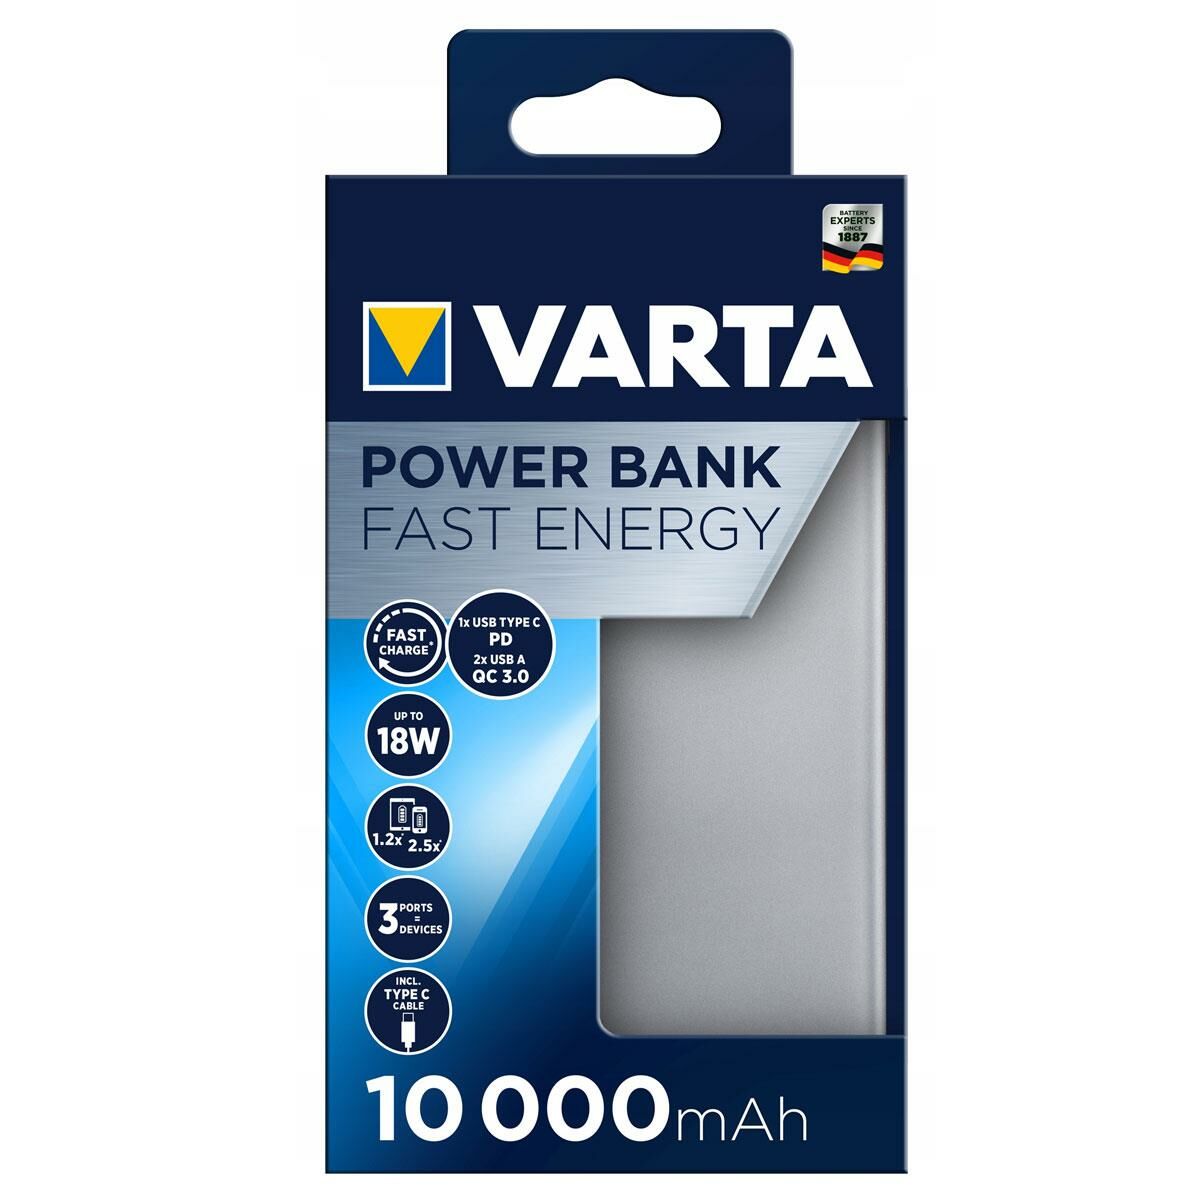 Varta 57981 Fast Energy 10000 mAh Power bank